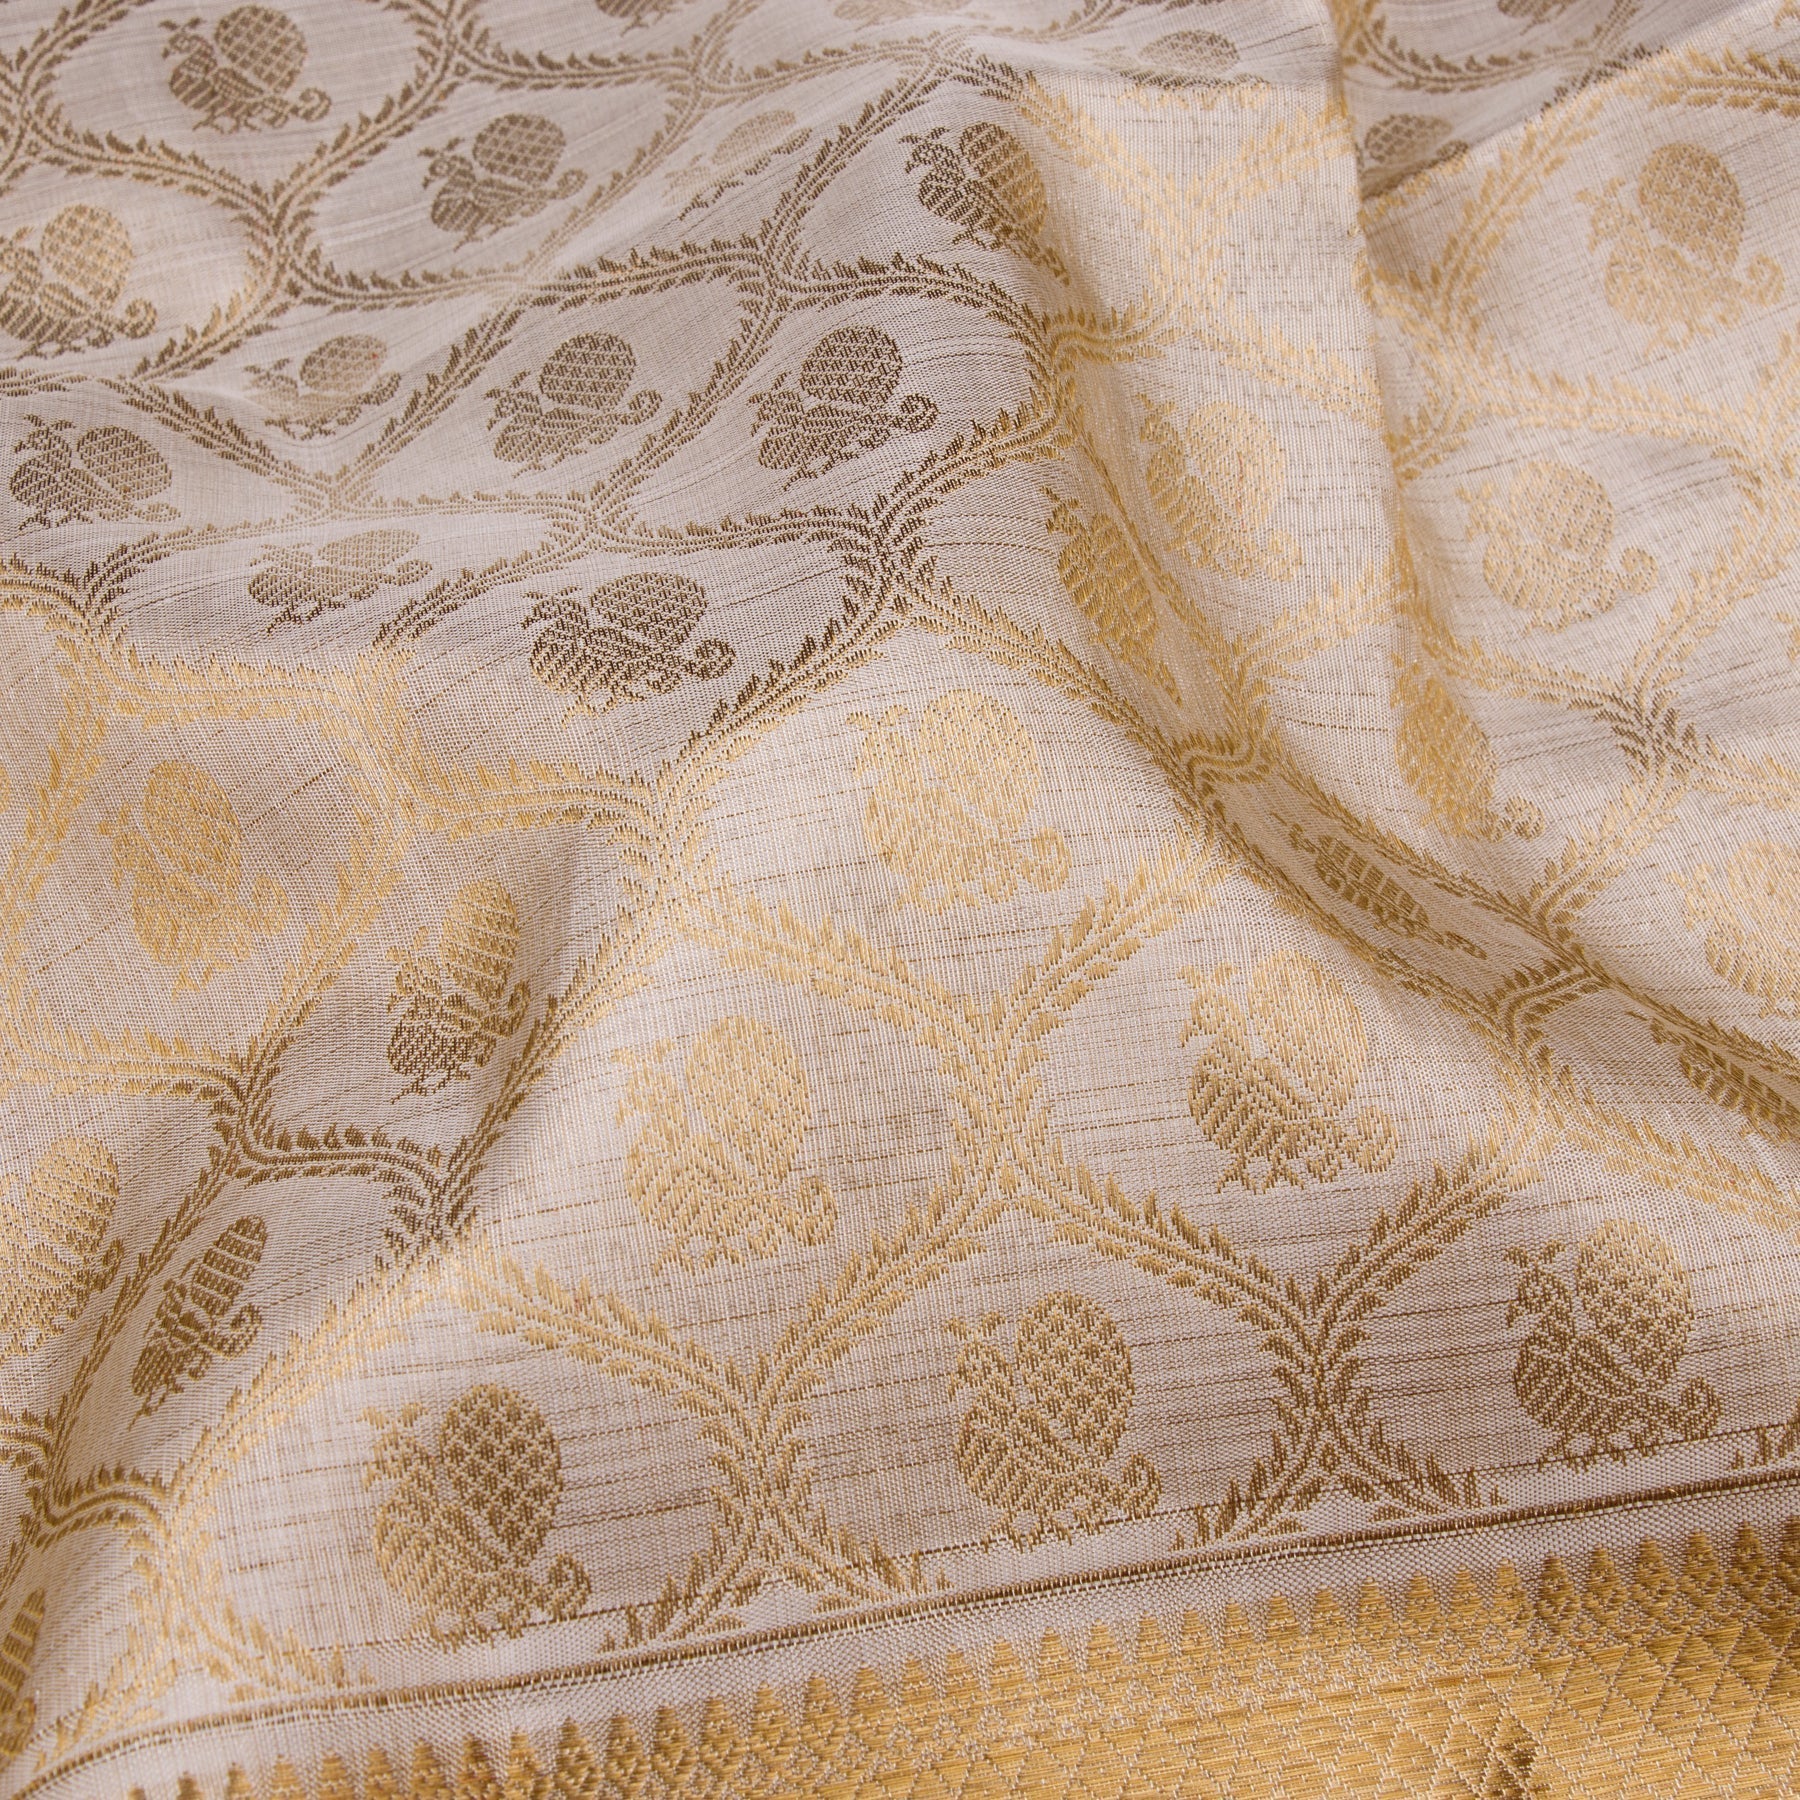 Kanakavalli Kanjivaram Silk Sari 22-110-HS001-05923 - Fabric View